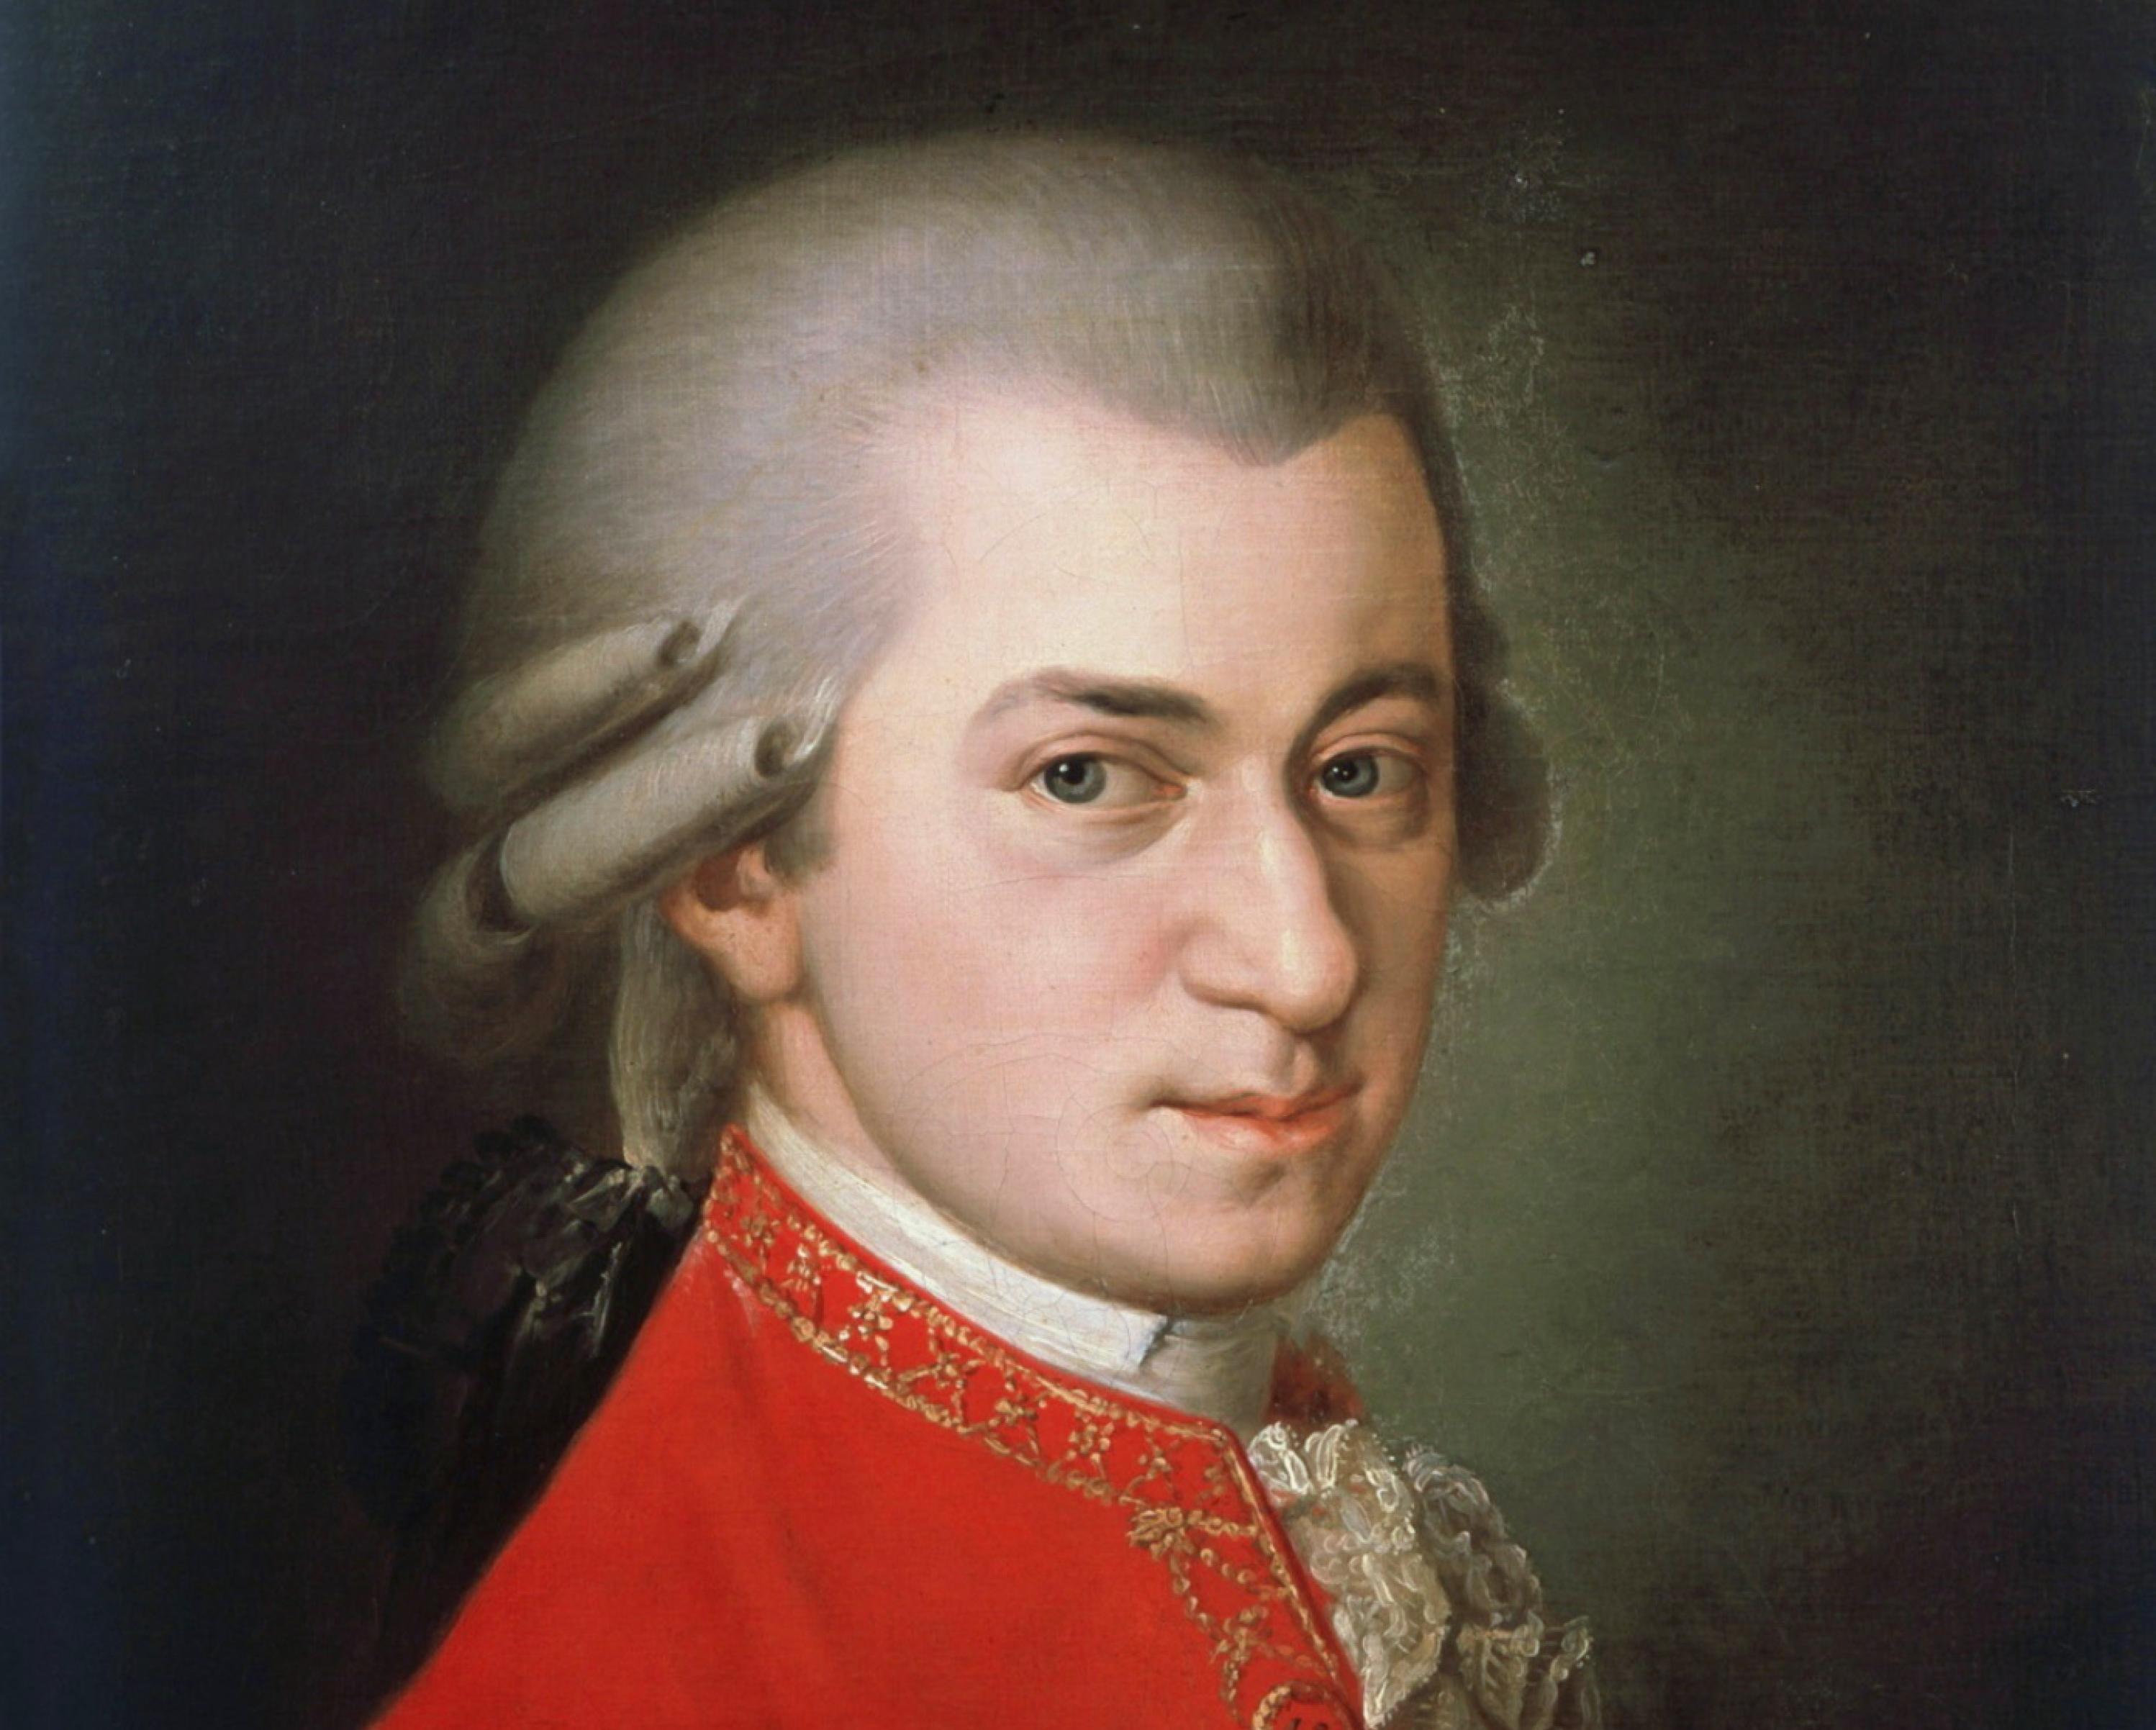 Органный концерт «Космос Баха и сияние Моцарта» со скидкой 50%